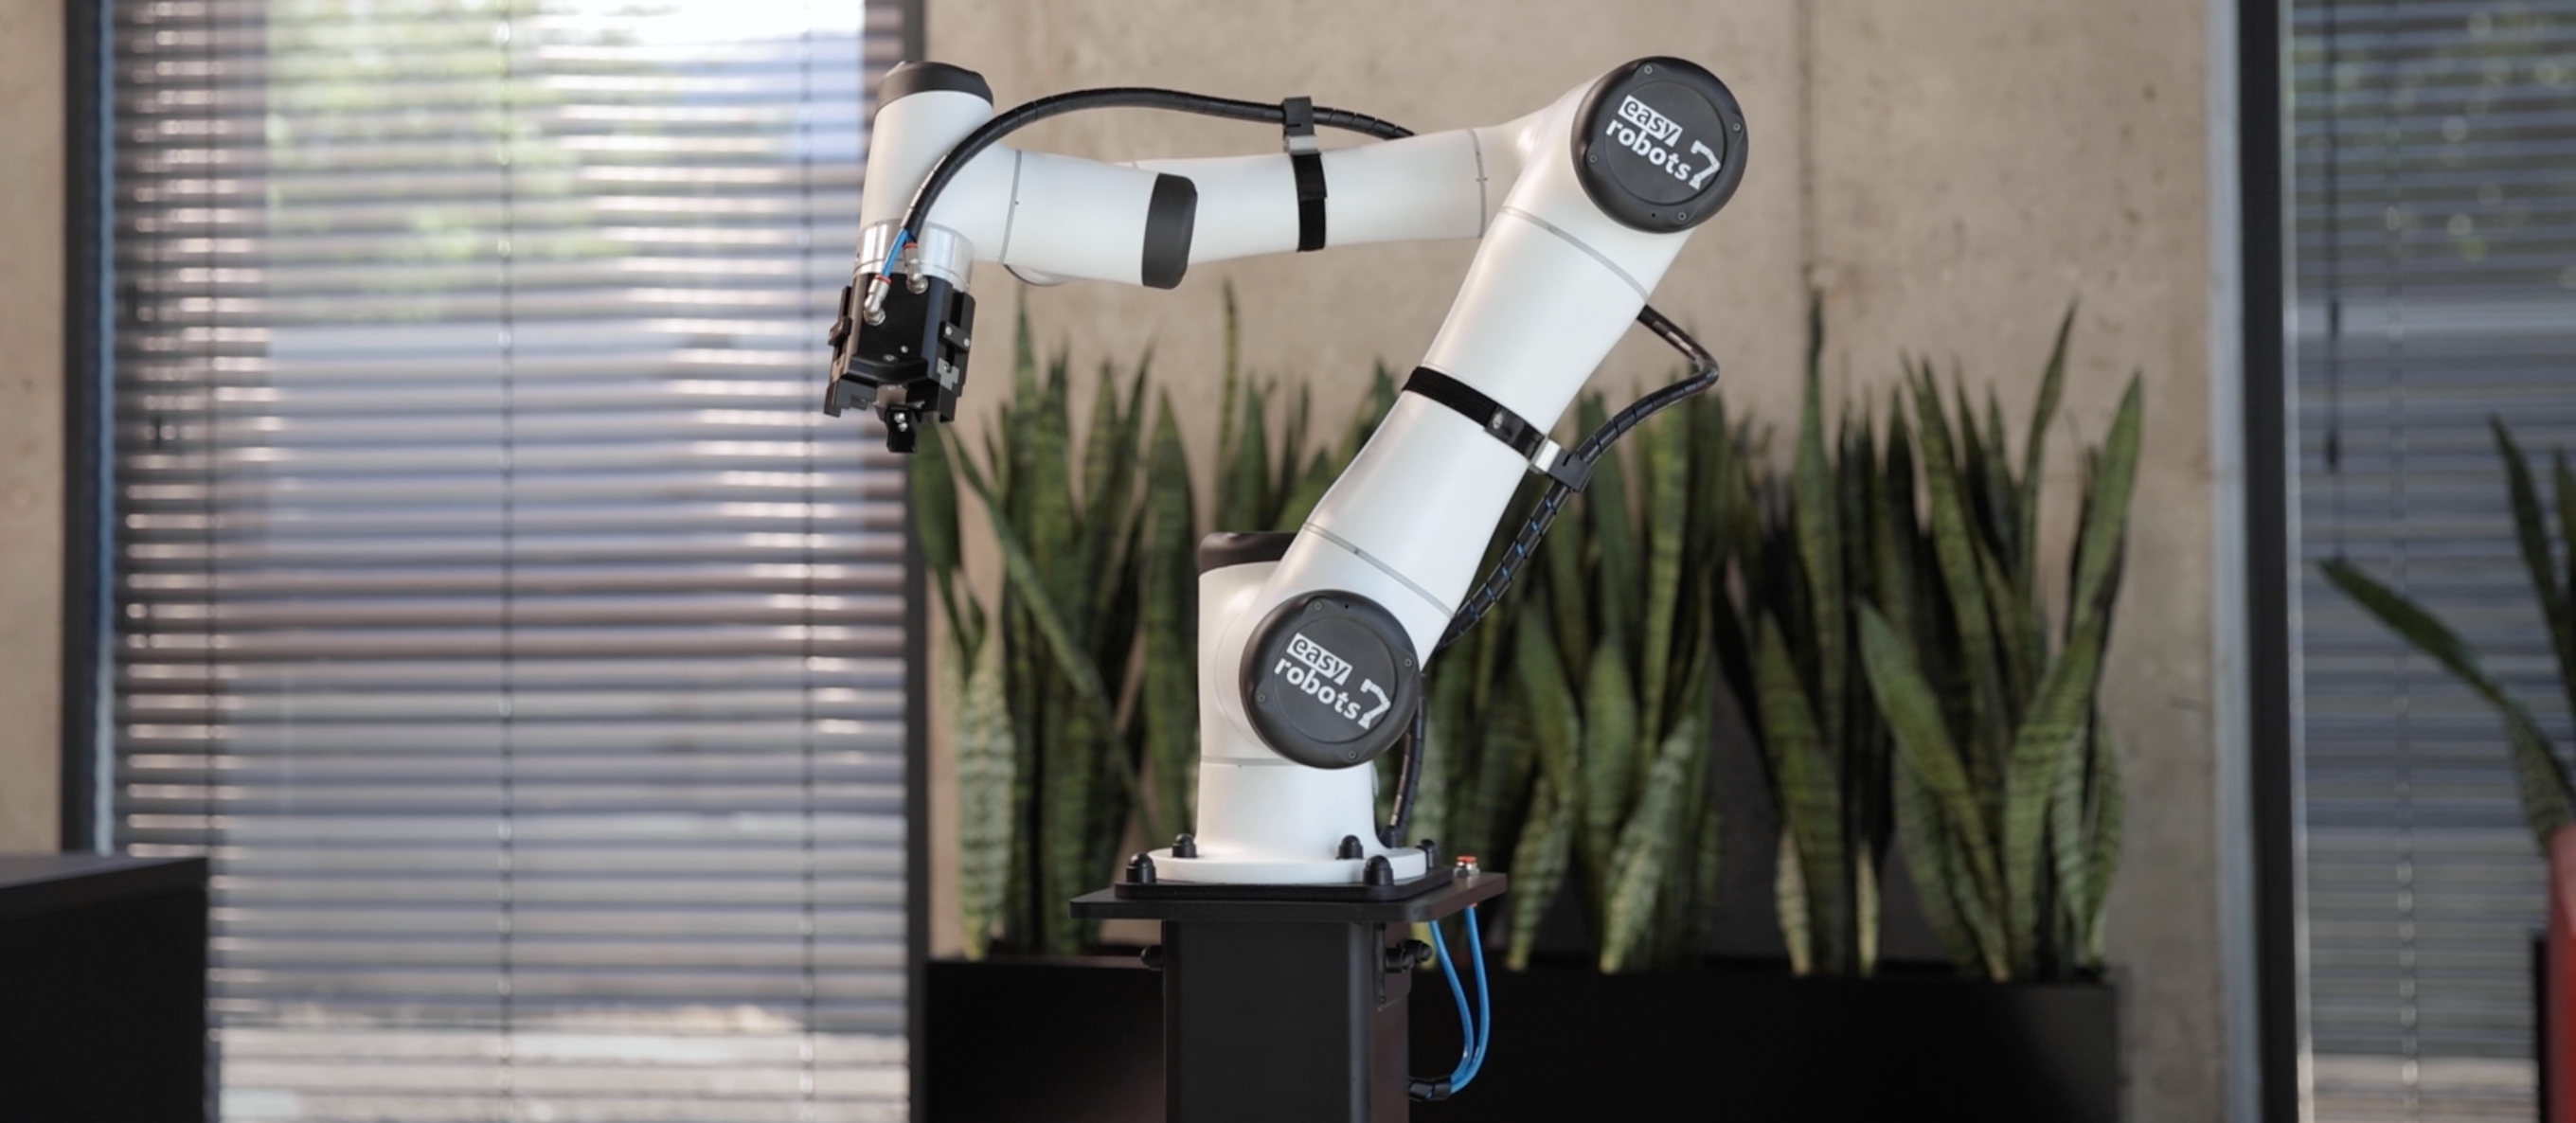 BLOG roboty przemysłowe a inne roboty podobieństwa i różnice